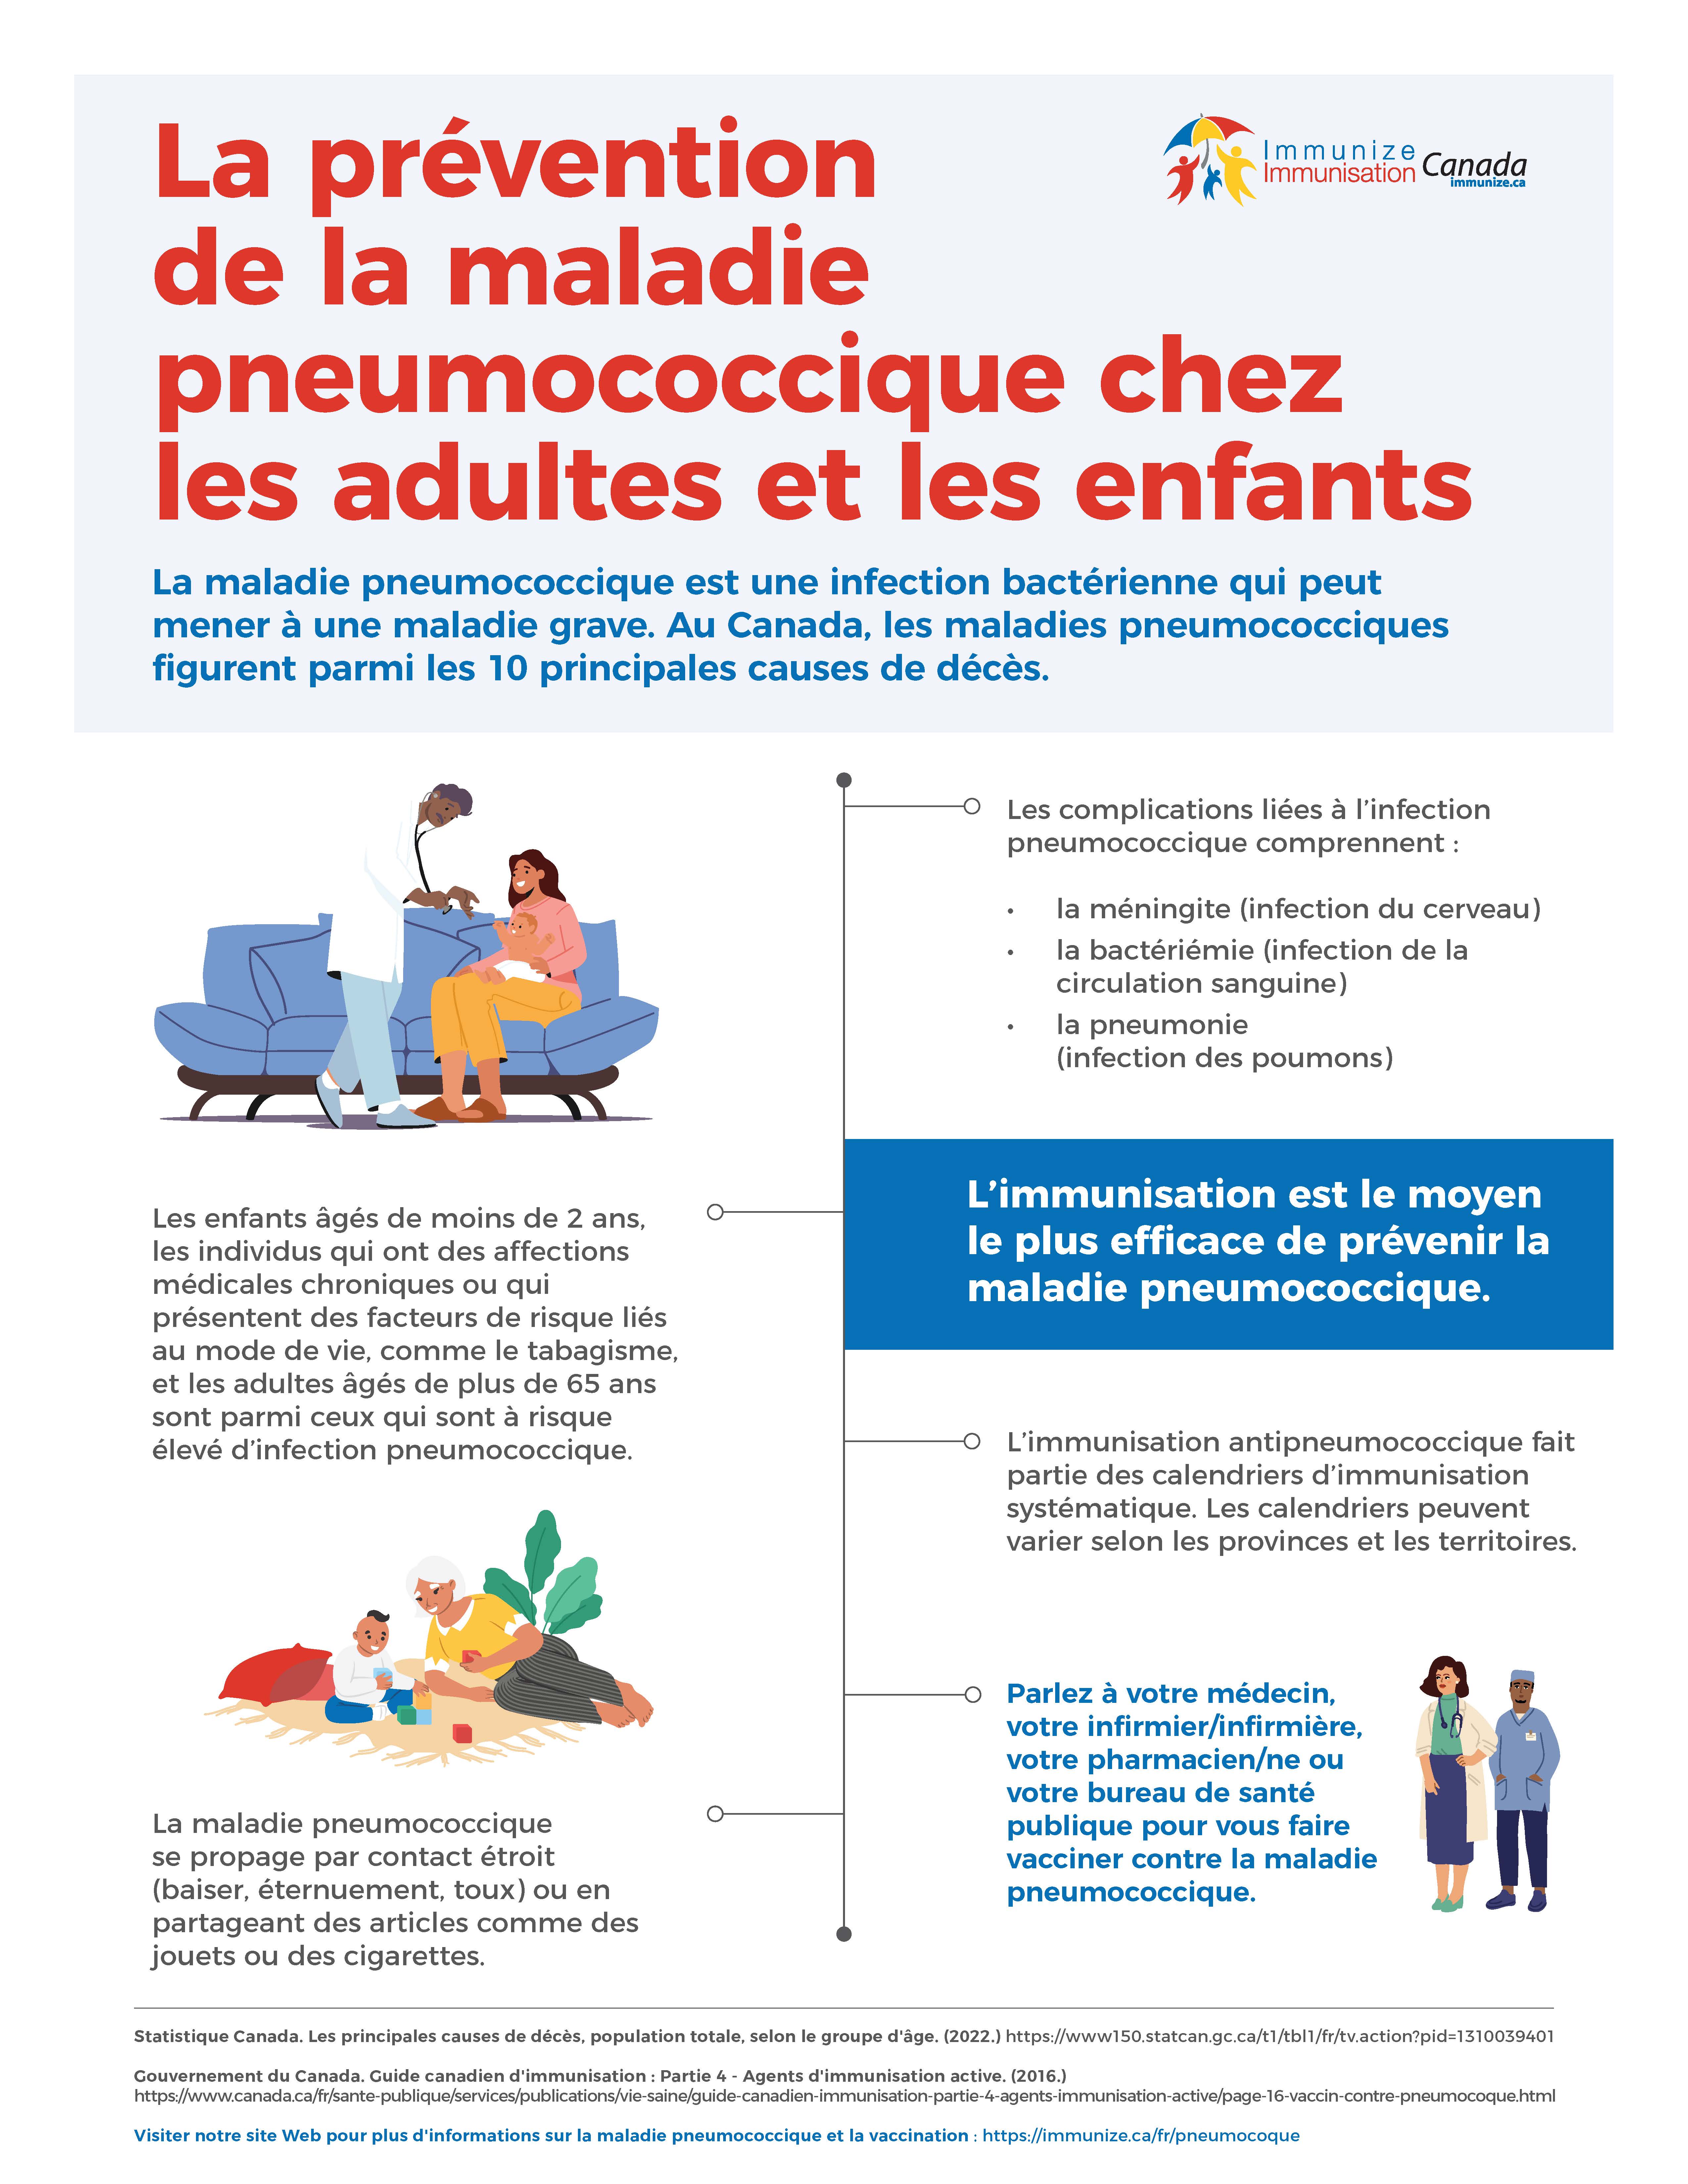 La prévention de la maladie pneumococcique chez les adultes et les enfants - infographie